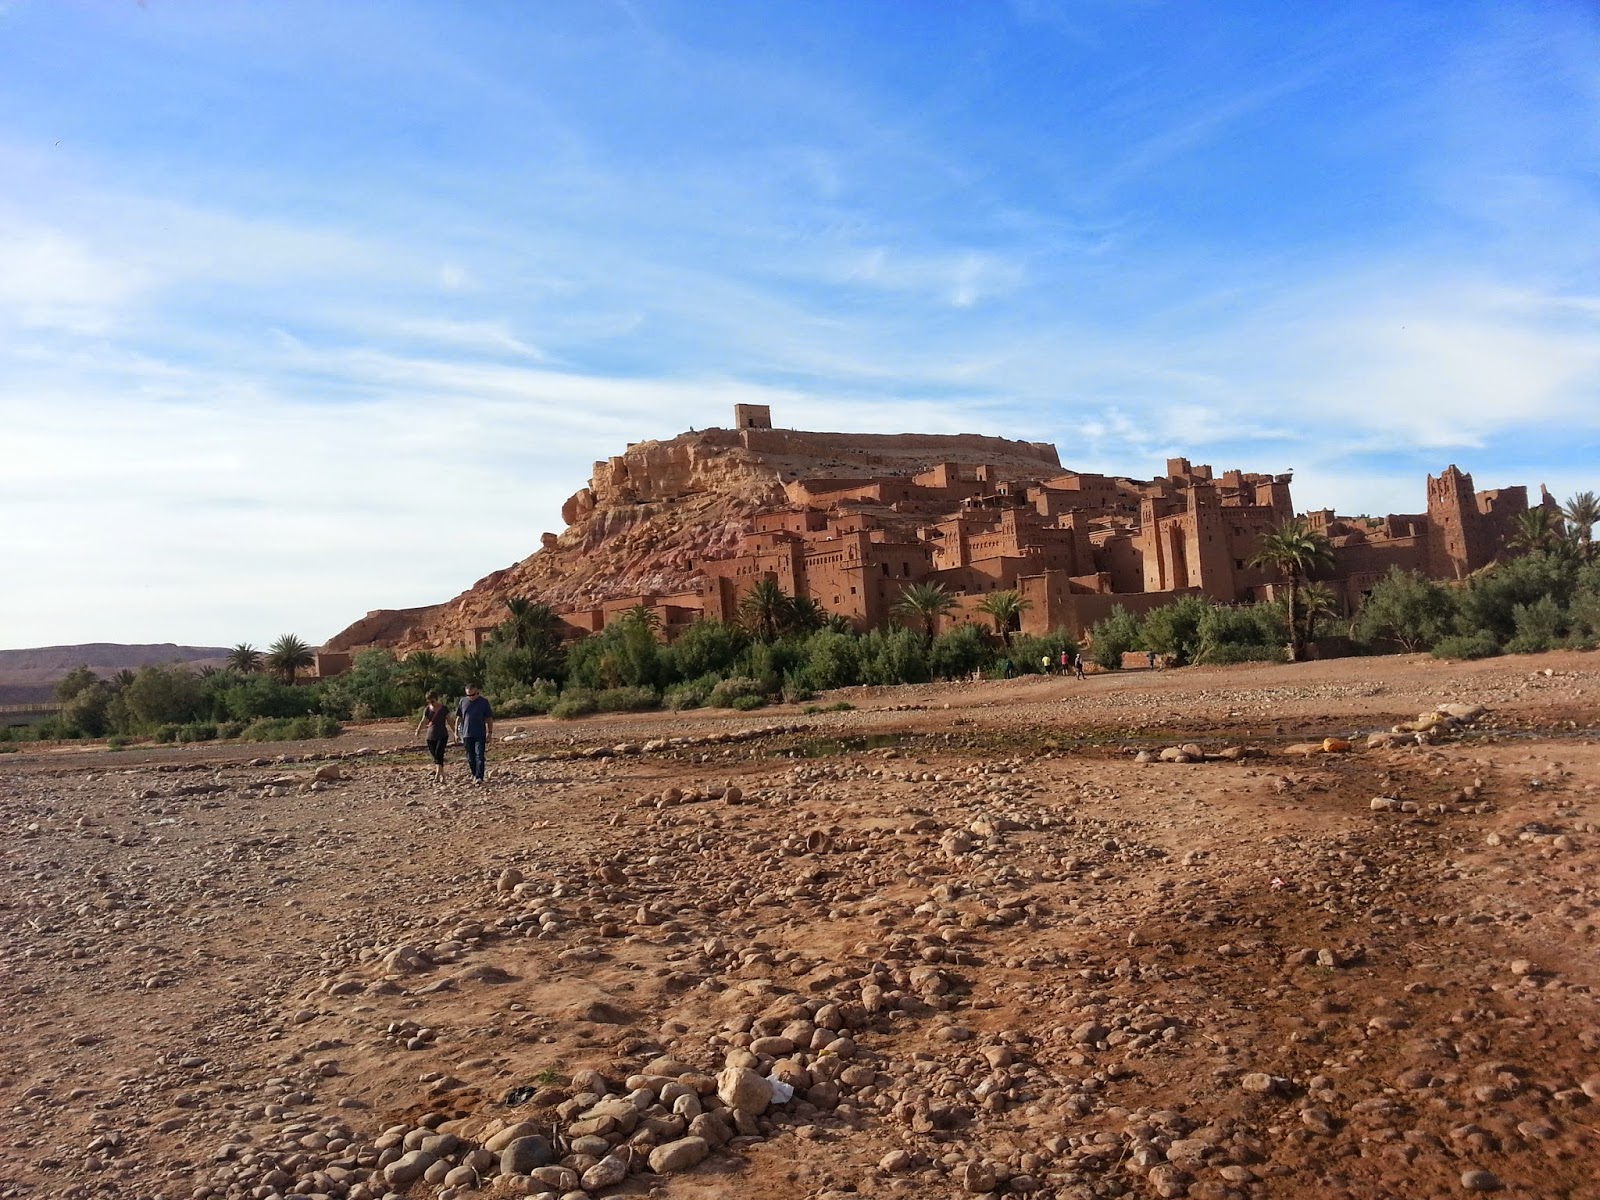 Ruta de 6 días por el sur de Marruecos - Blogs of Morocco - De Marrakech a Chegaga (4)